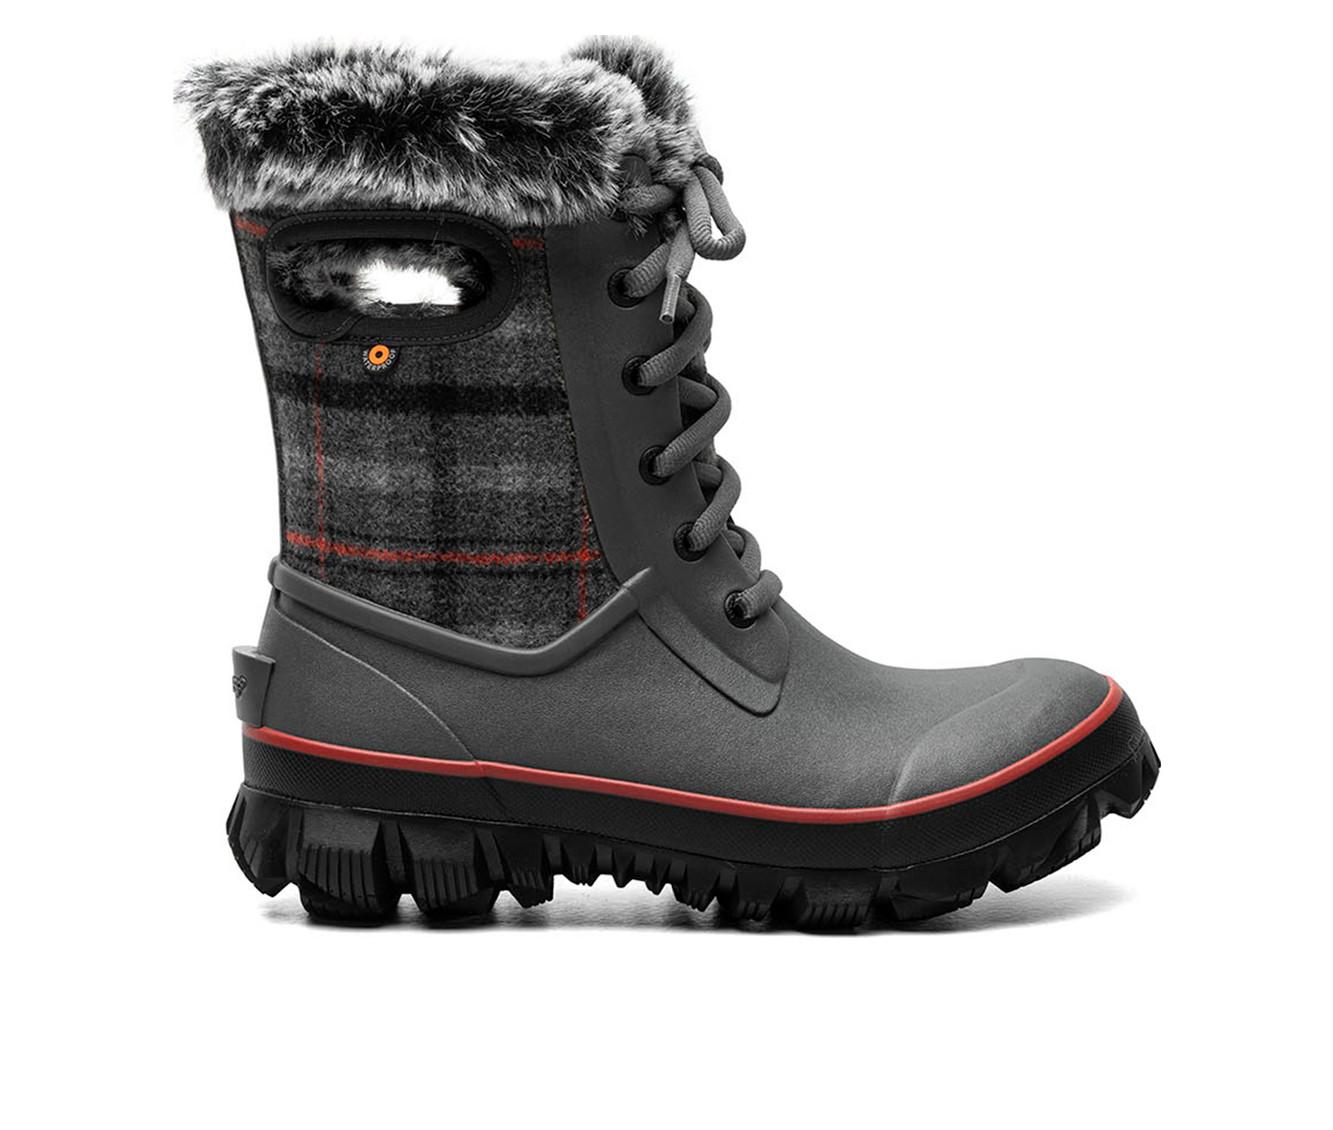 Women's Bogs Footwear Arcata Cozy Plaid Winter Boots